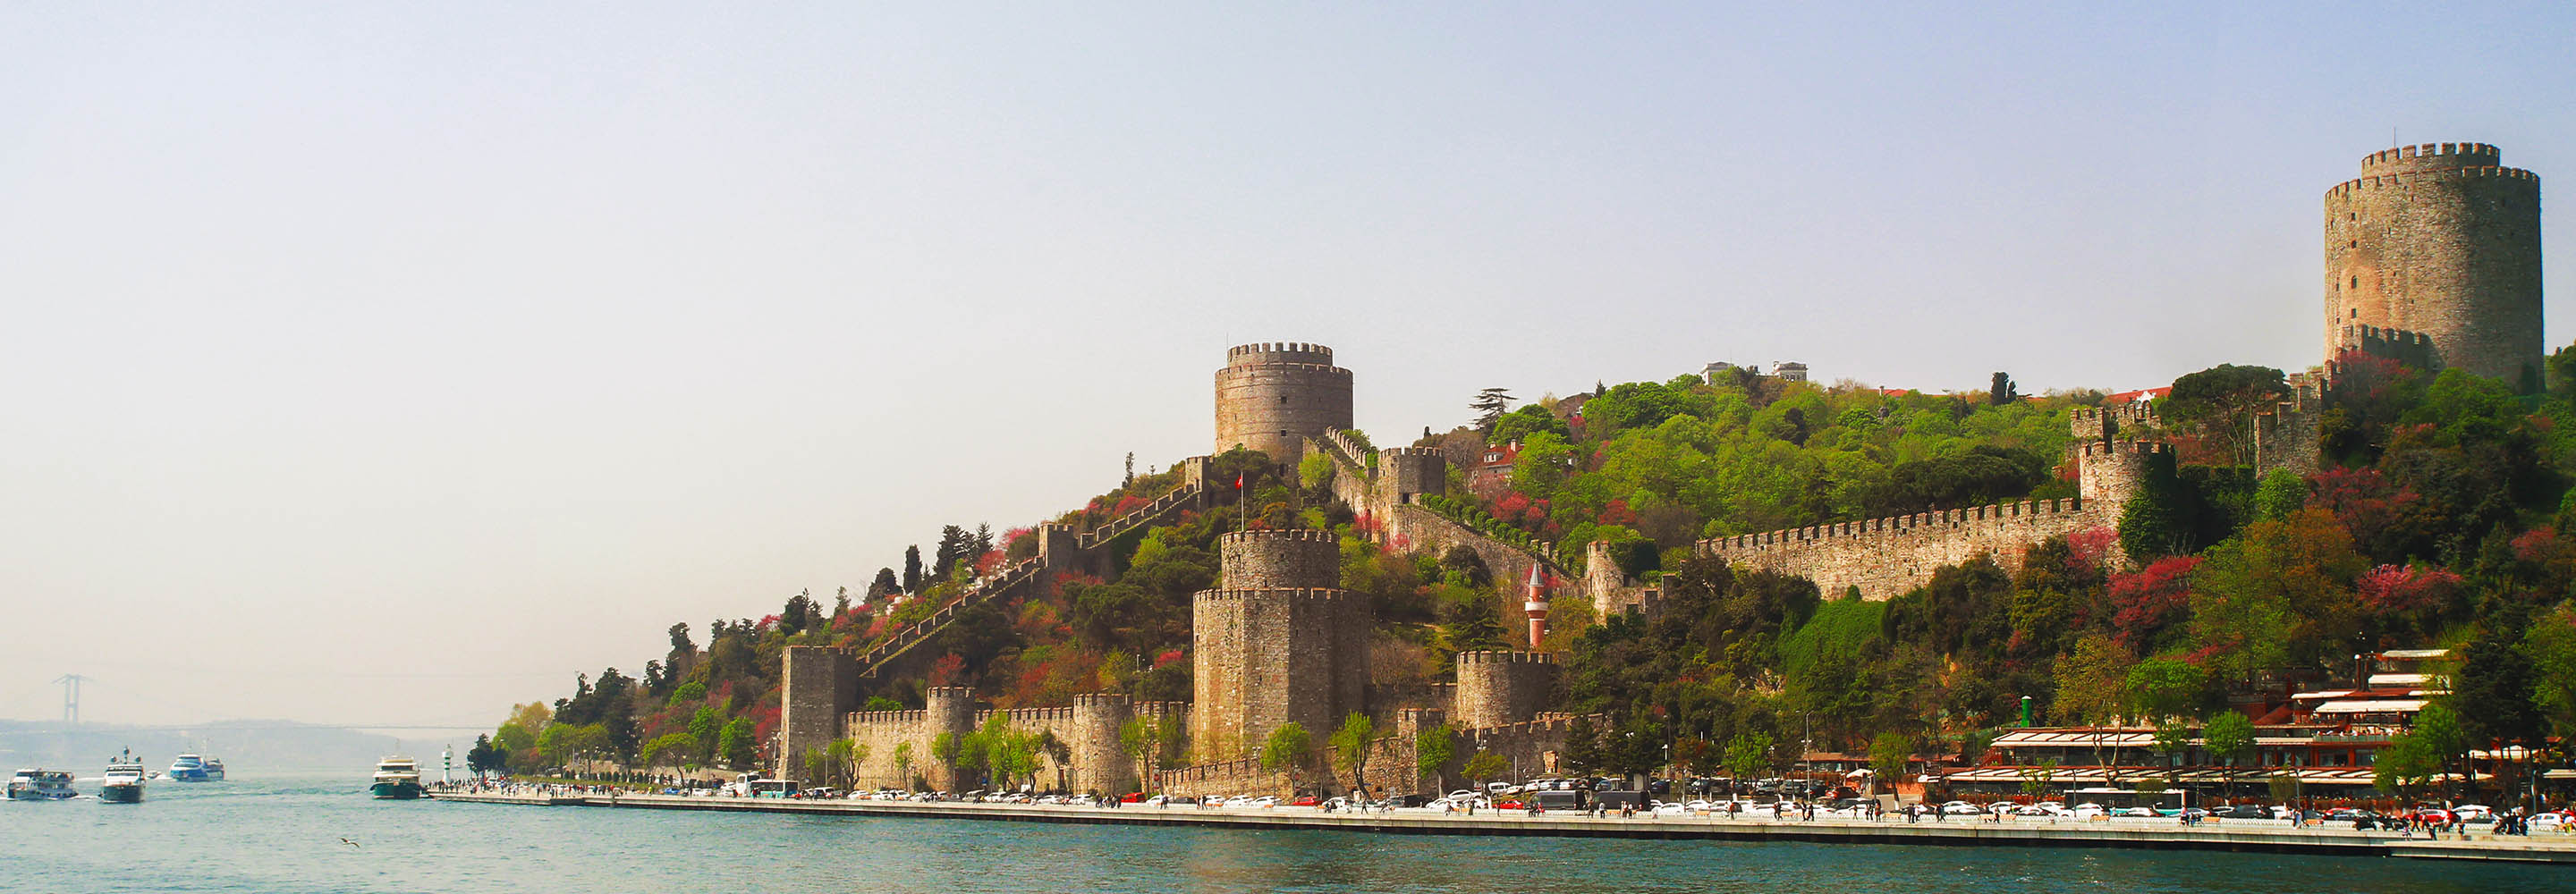 14 достопримечательностей Стамбула, которые стоит посетить